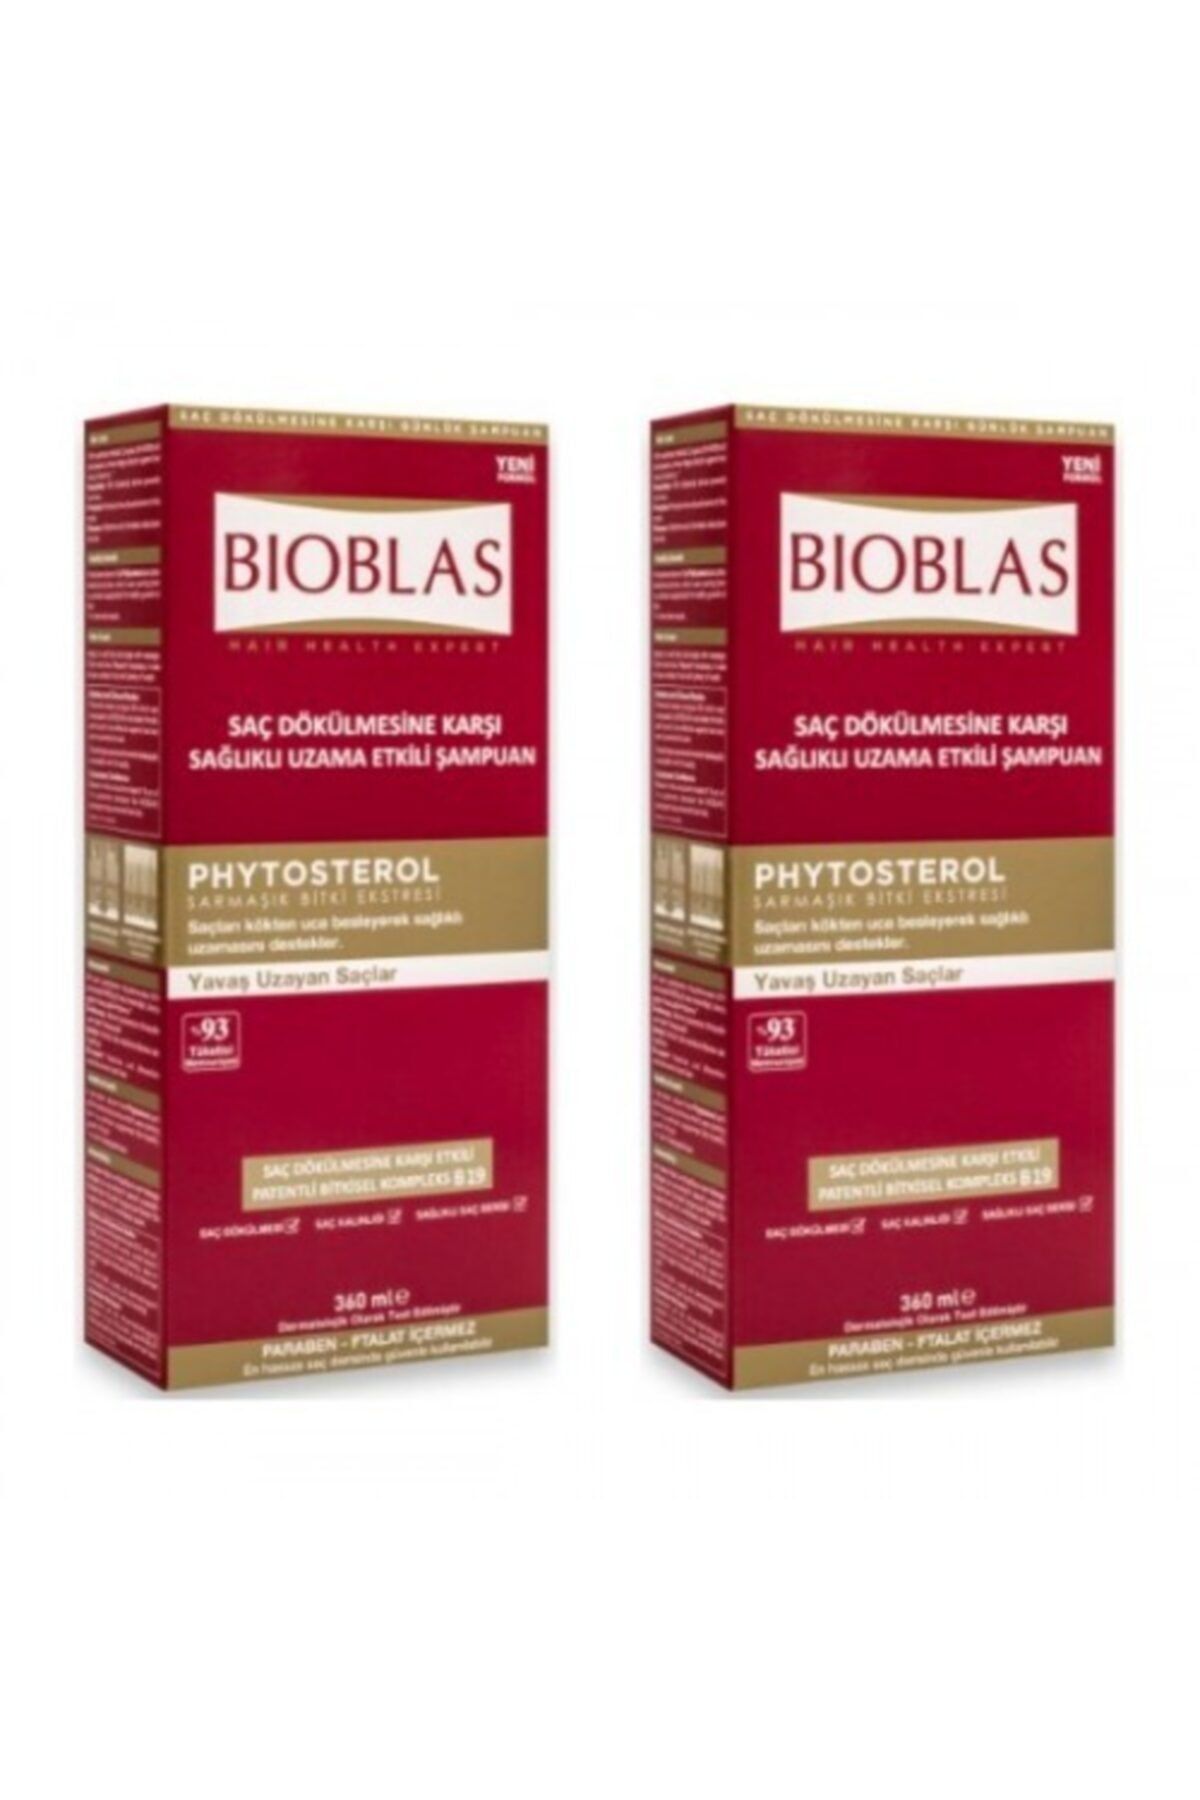 Bioblas Bıoblas Şamp 360ml X2 Adet Saç Dökülmesine Karşı Sağlıklı Uzama Etkili Şamp